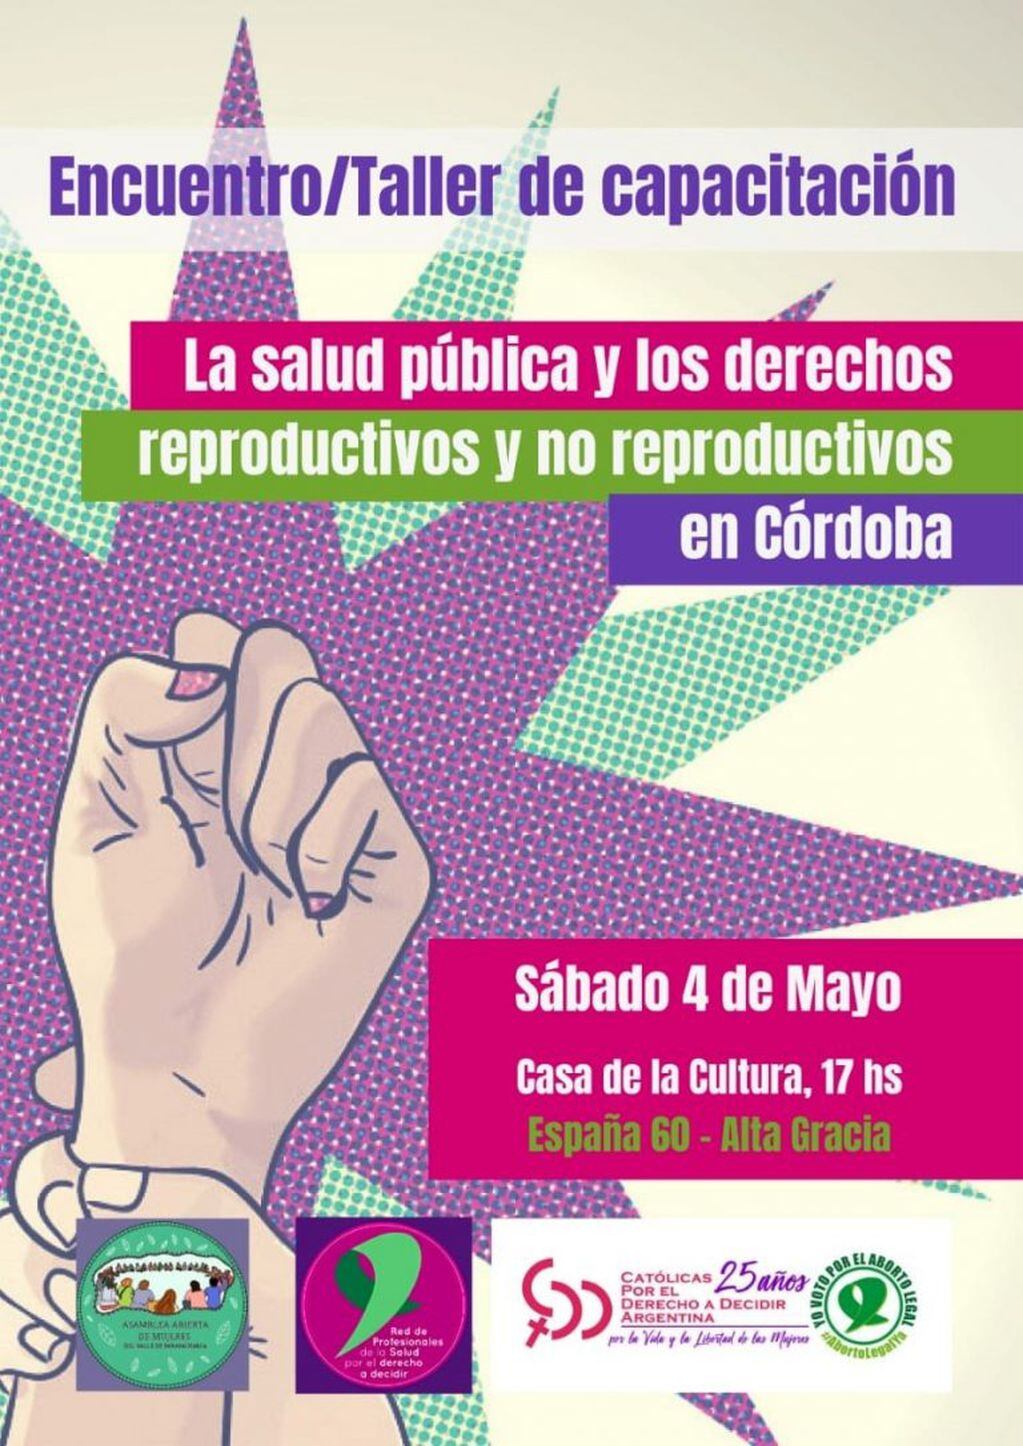 Invitación al Encuentro Salud pública y los derechos reproductivos y no reproductivos.